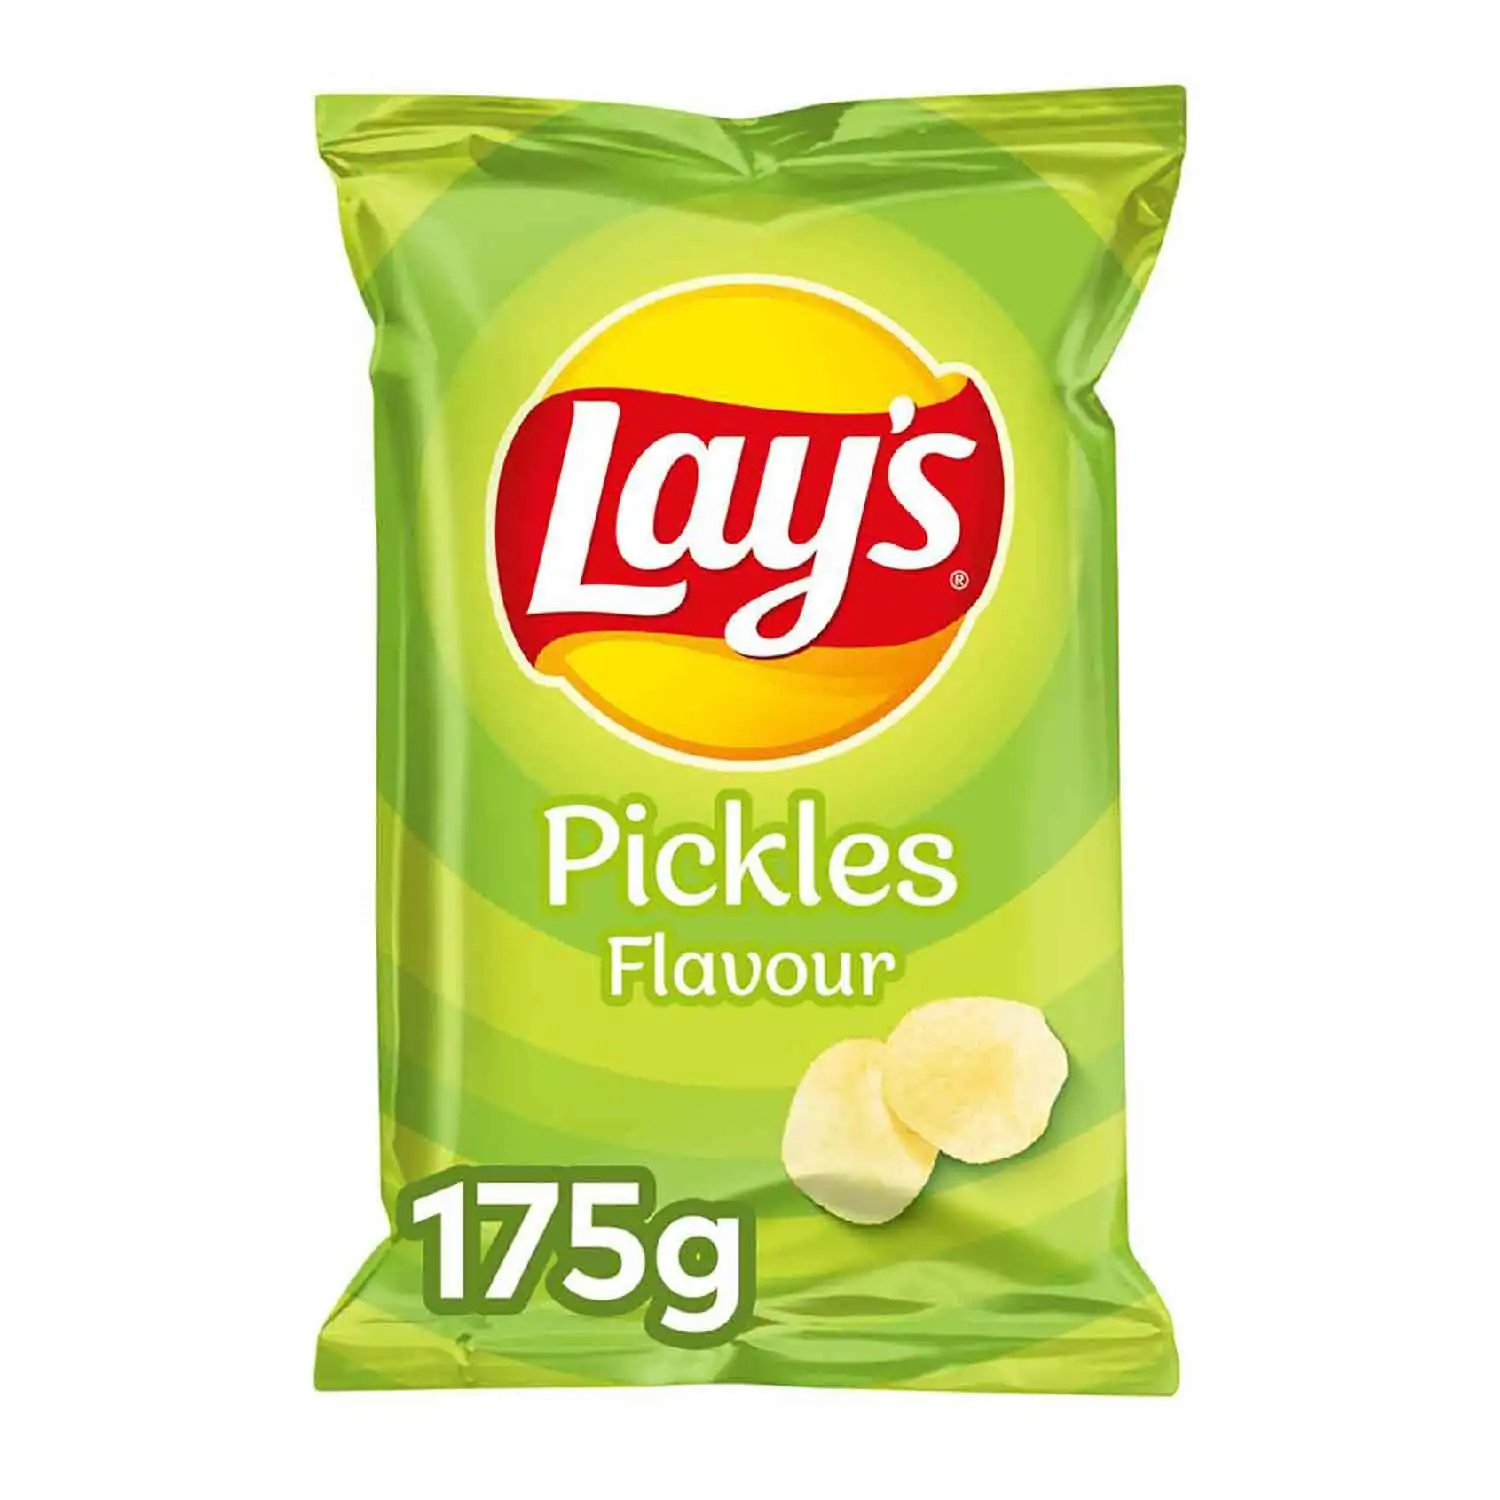 Lay's pickles 175g - Buy at Real Tobacco